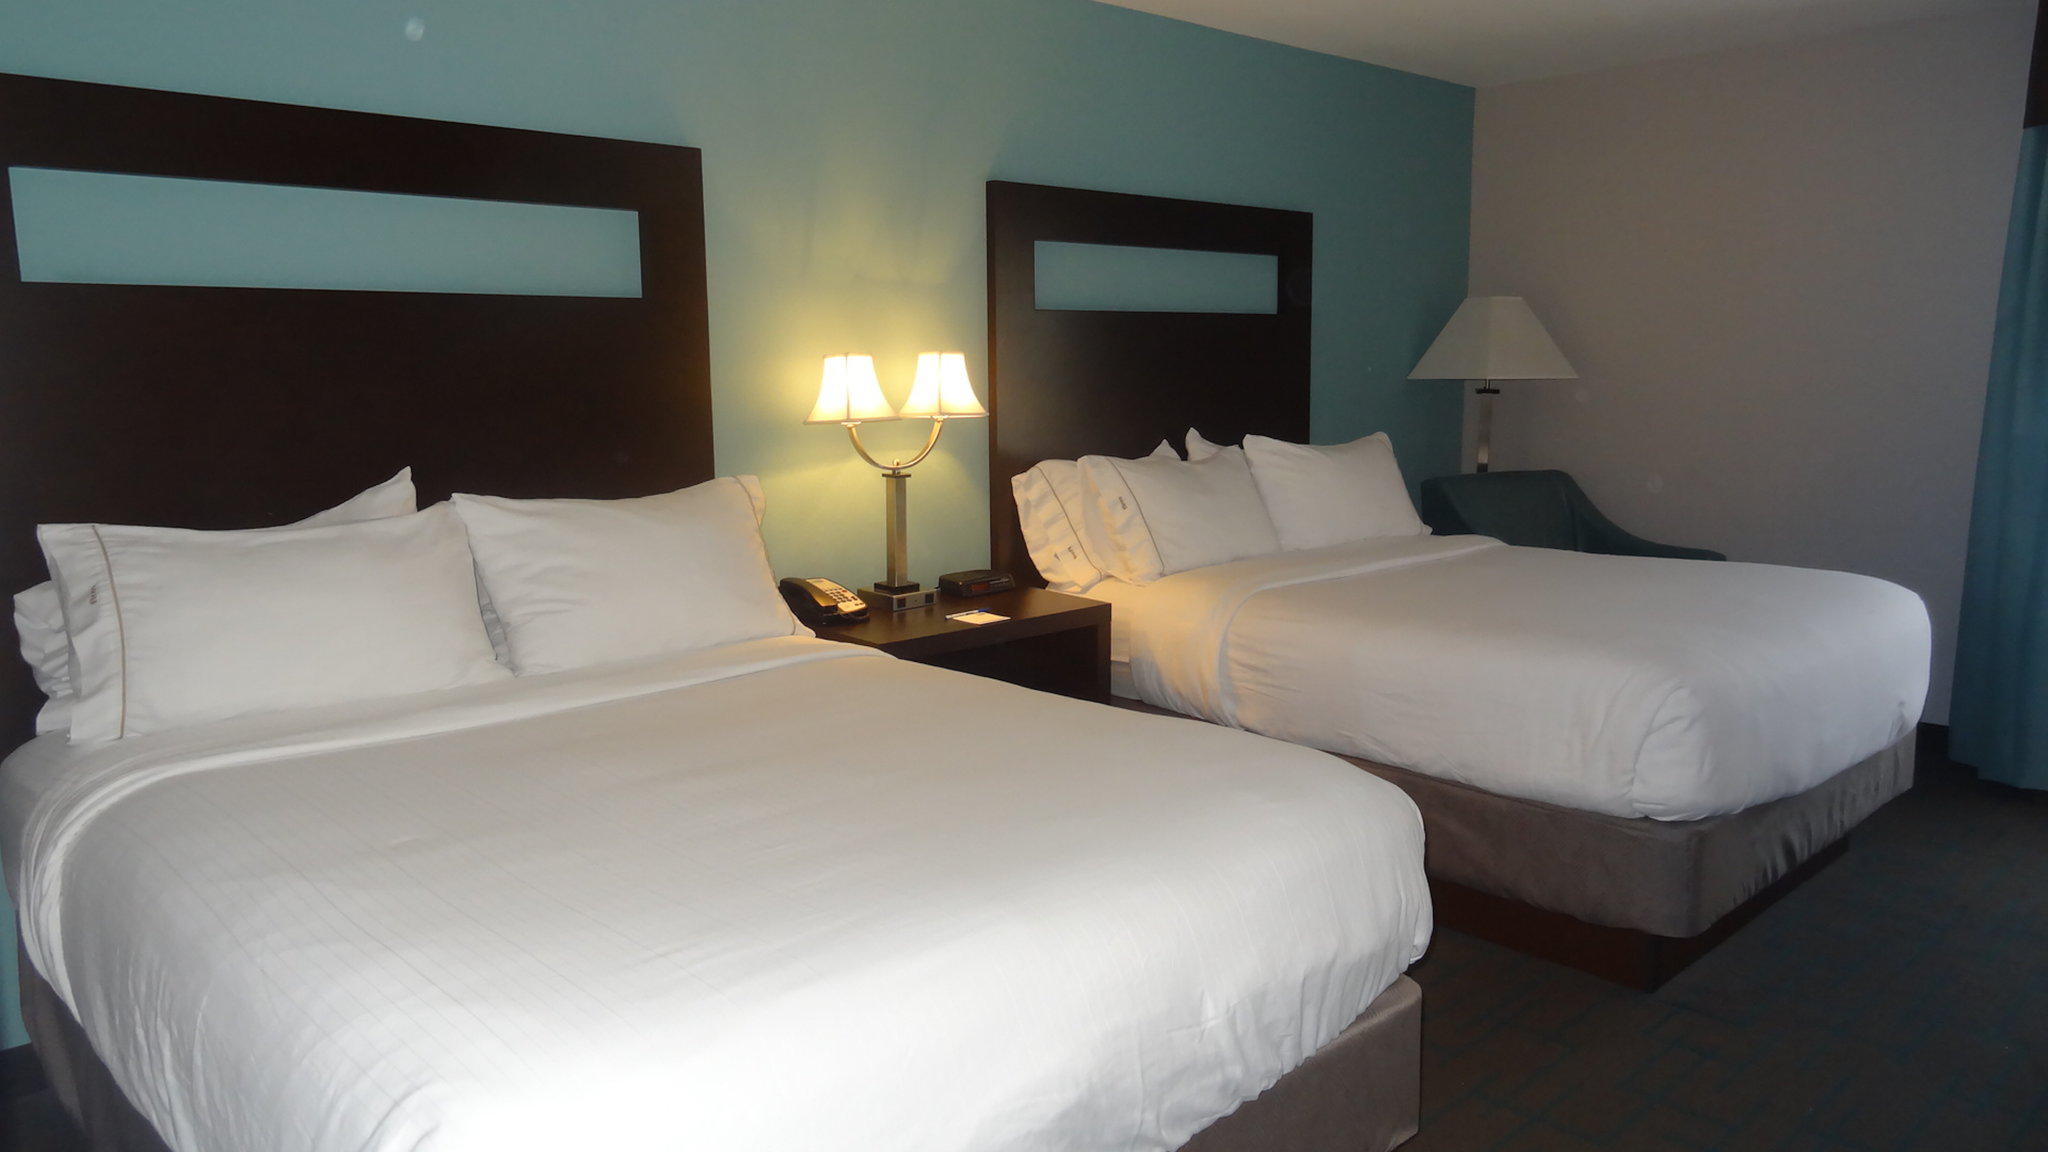 Holiday Inn Express Kansas City - Bonner Springs, an IHG Hotel Bonner Springs (913)721-5300